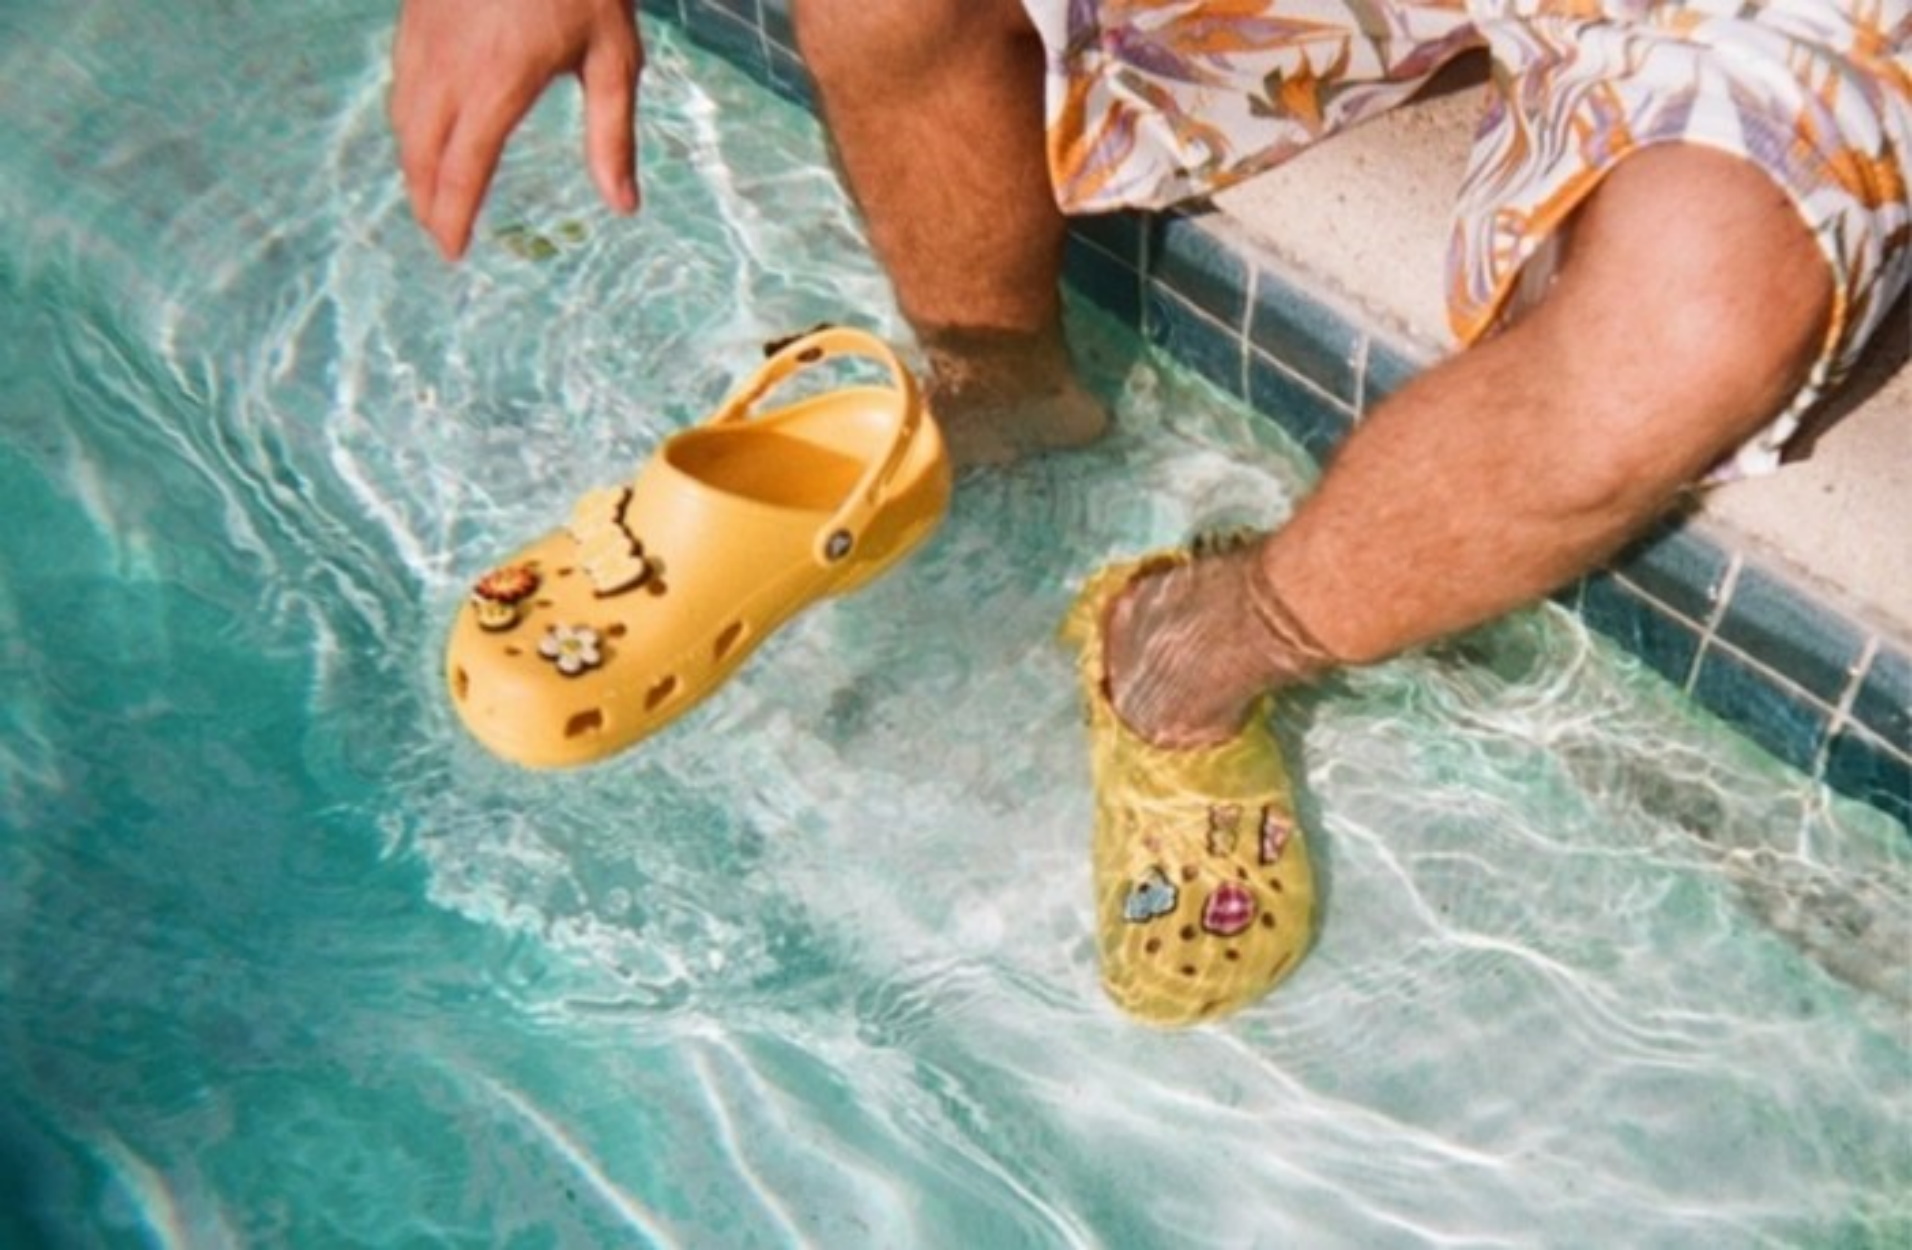 Τα Crocs των 55 δολαρίων του Τζάστιν Μπίμπερ αναμένεται να γίνουν sold out!